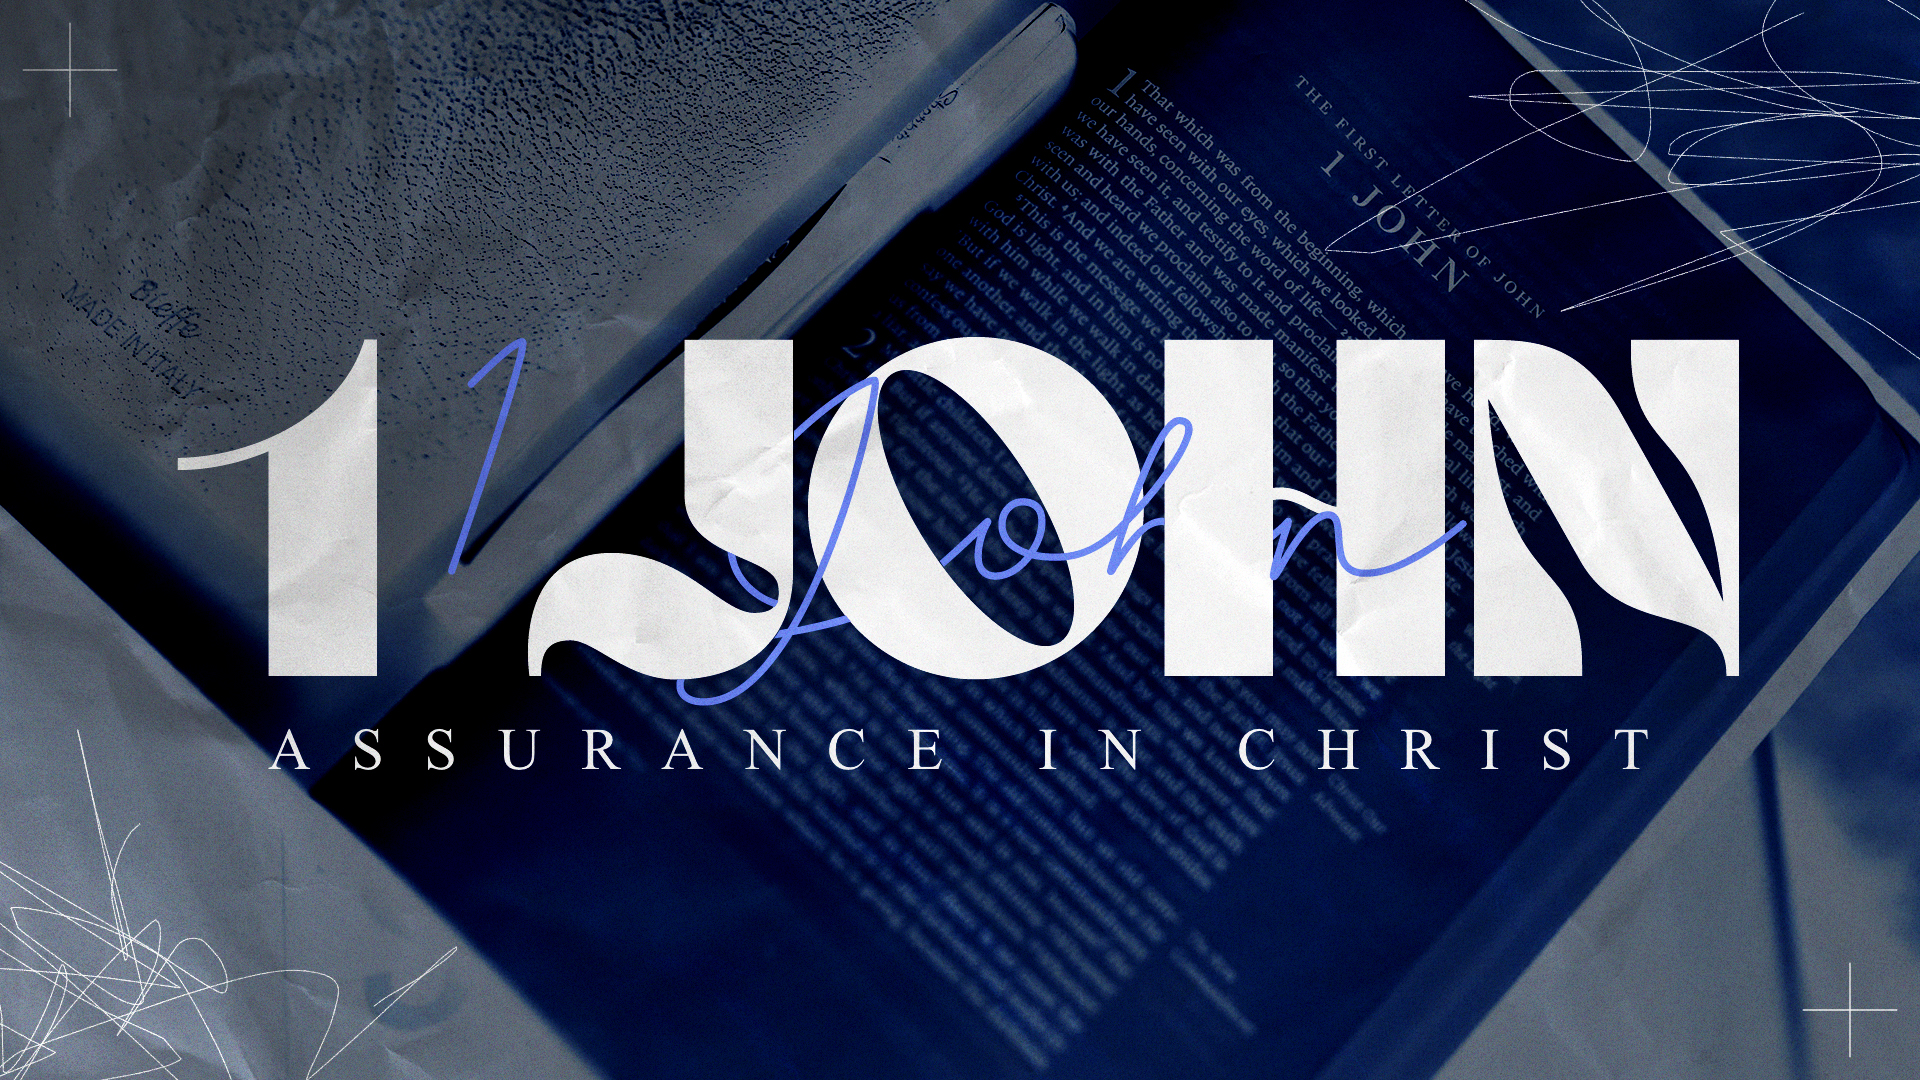 1 John: Assurance in Christ